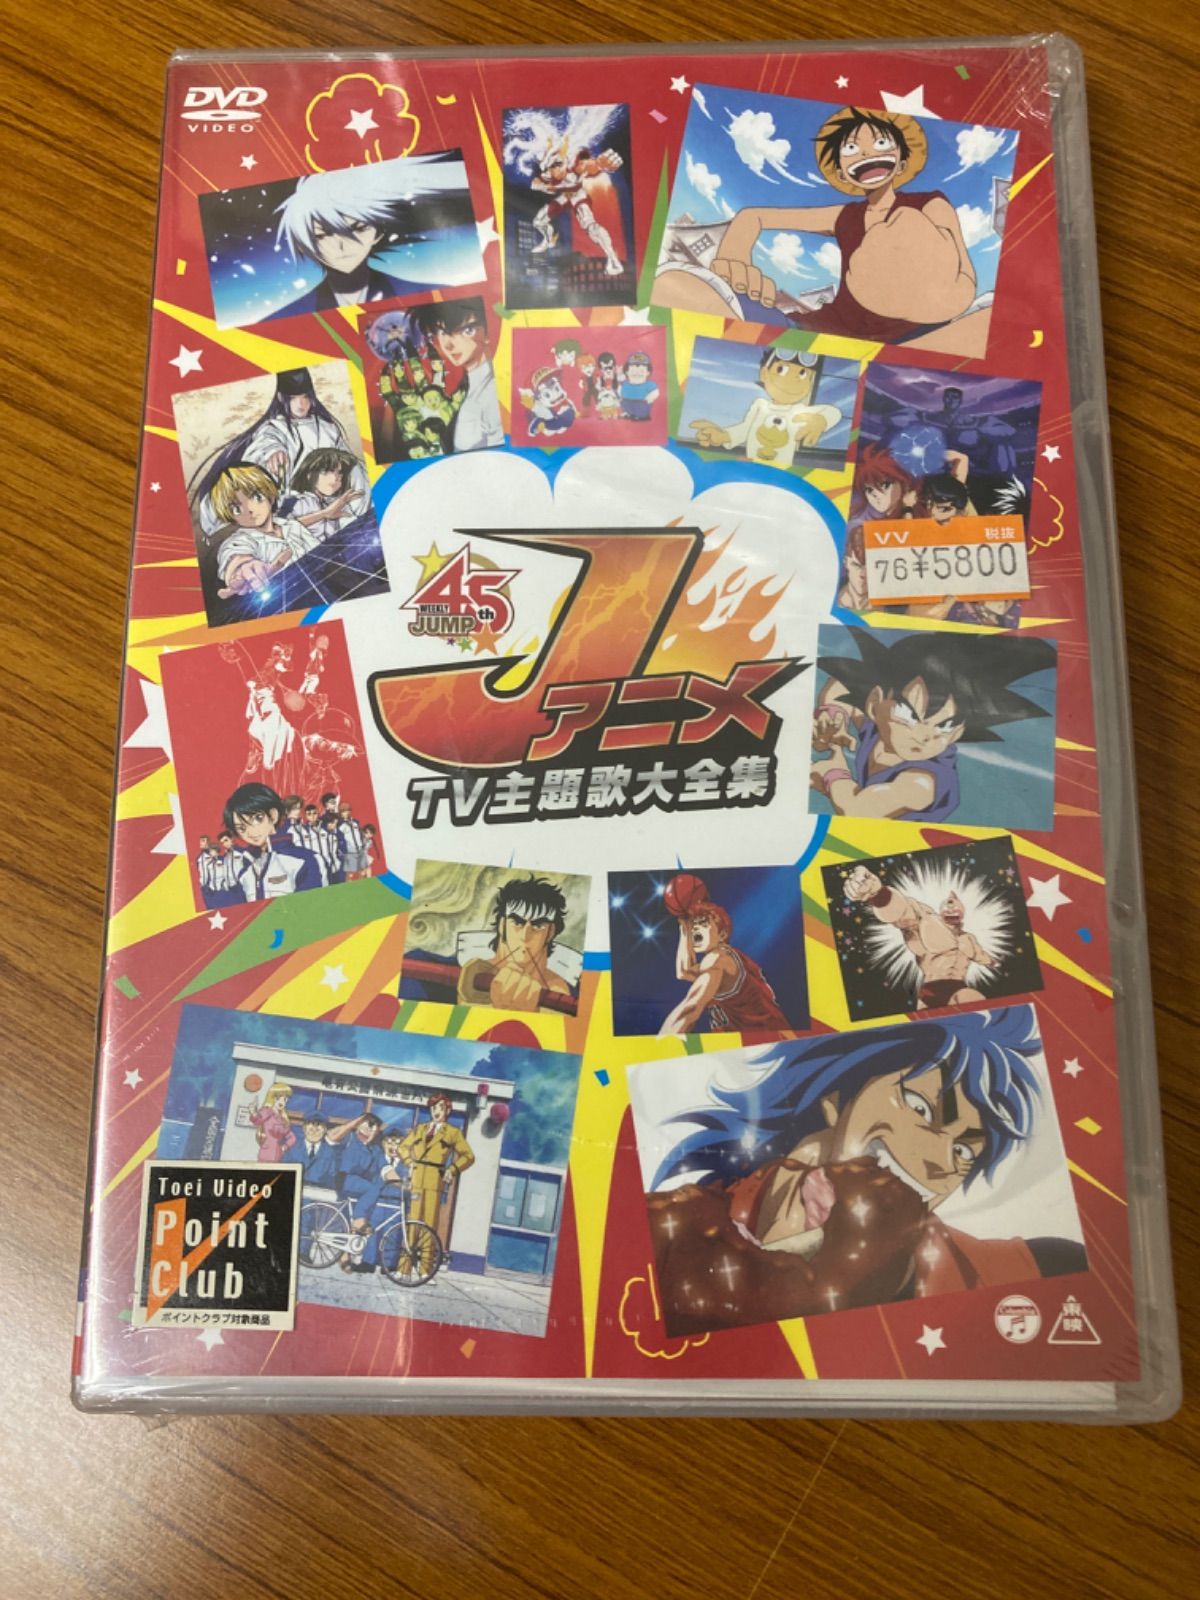 きまぐれオレンジ☆ロード　The Series　テレビシリーズ　DVD-BOX